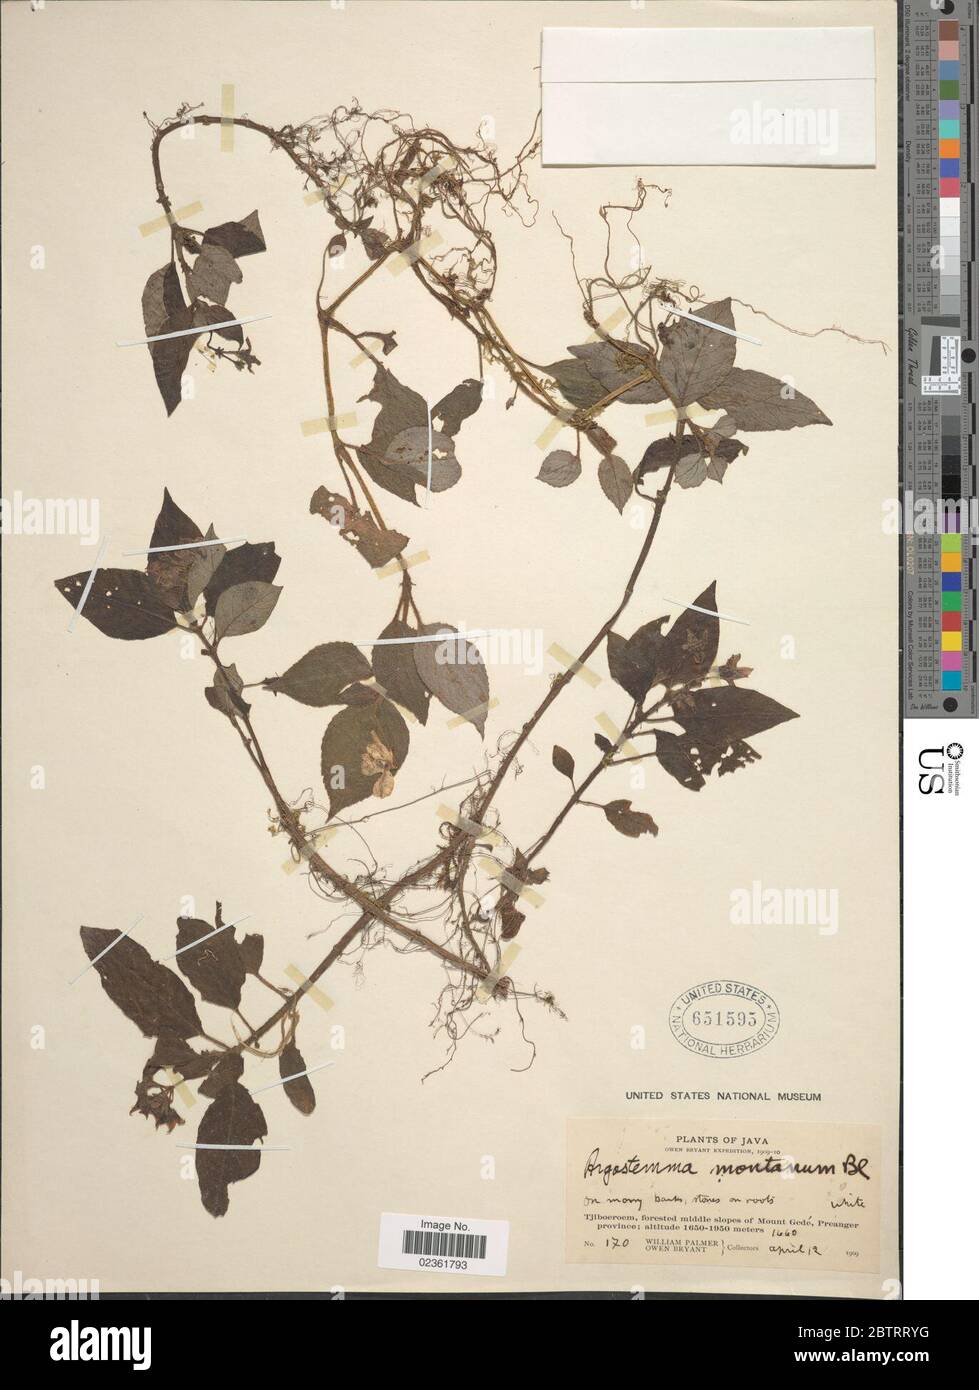 Argostemma montanum Blume ex DC. Stock Photo